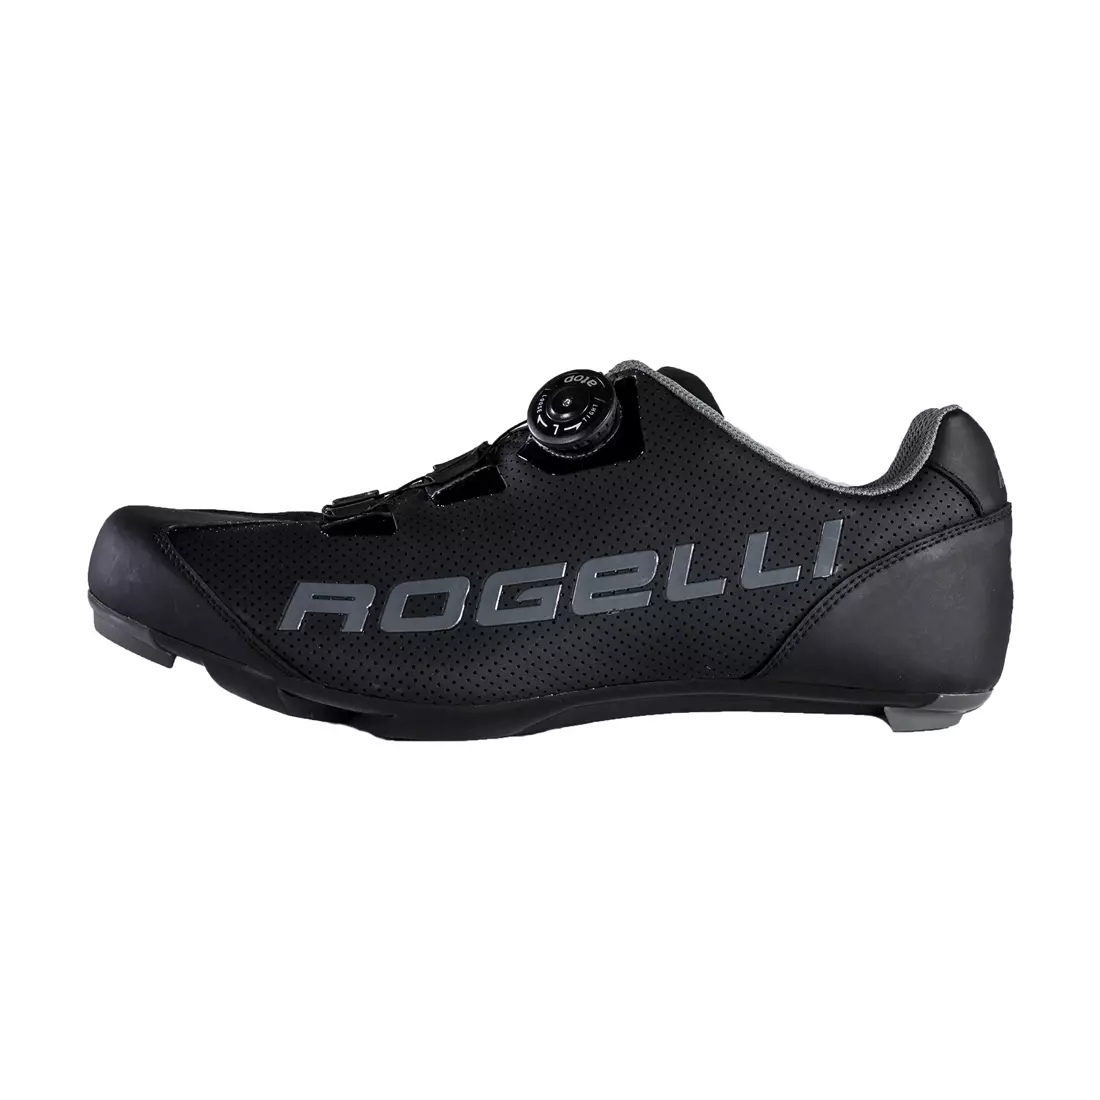 ROGELLI AB-410 országúti kerékpáros cipő, fekete-fluoro